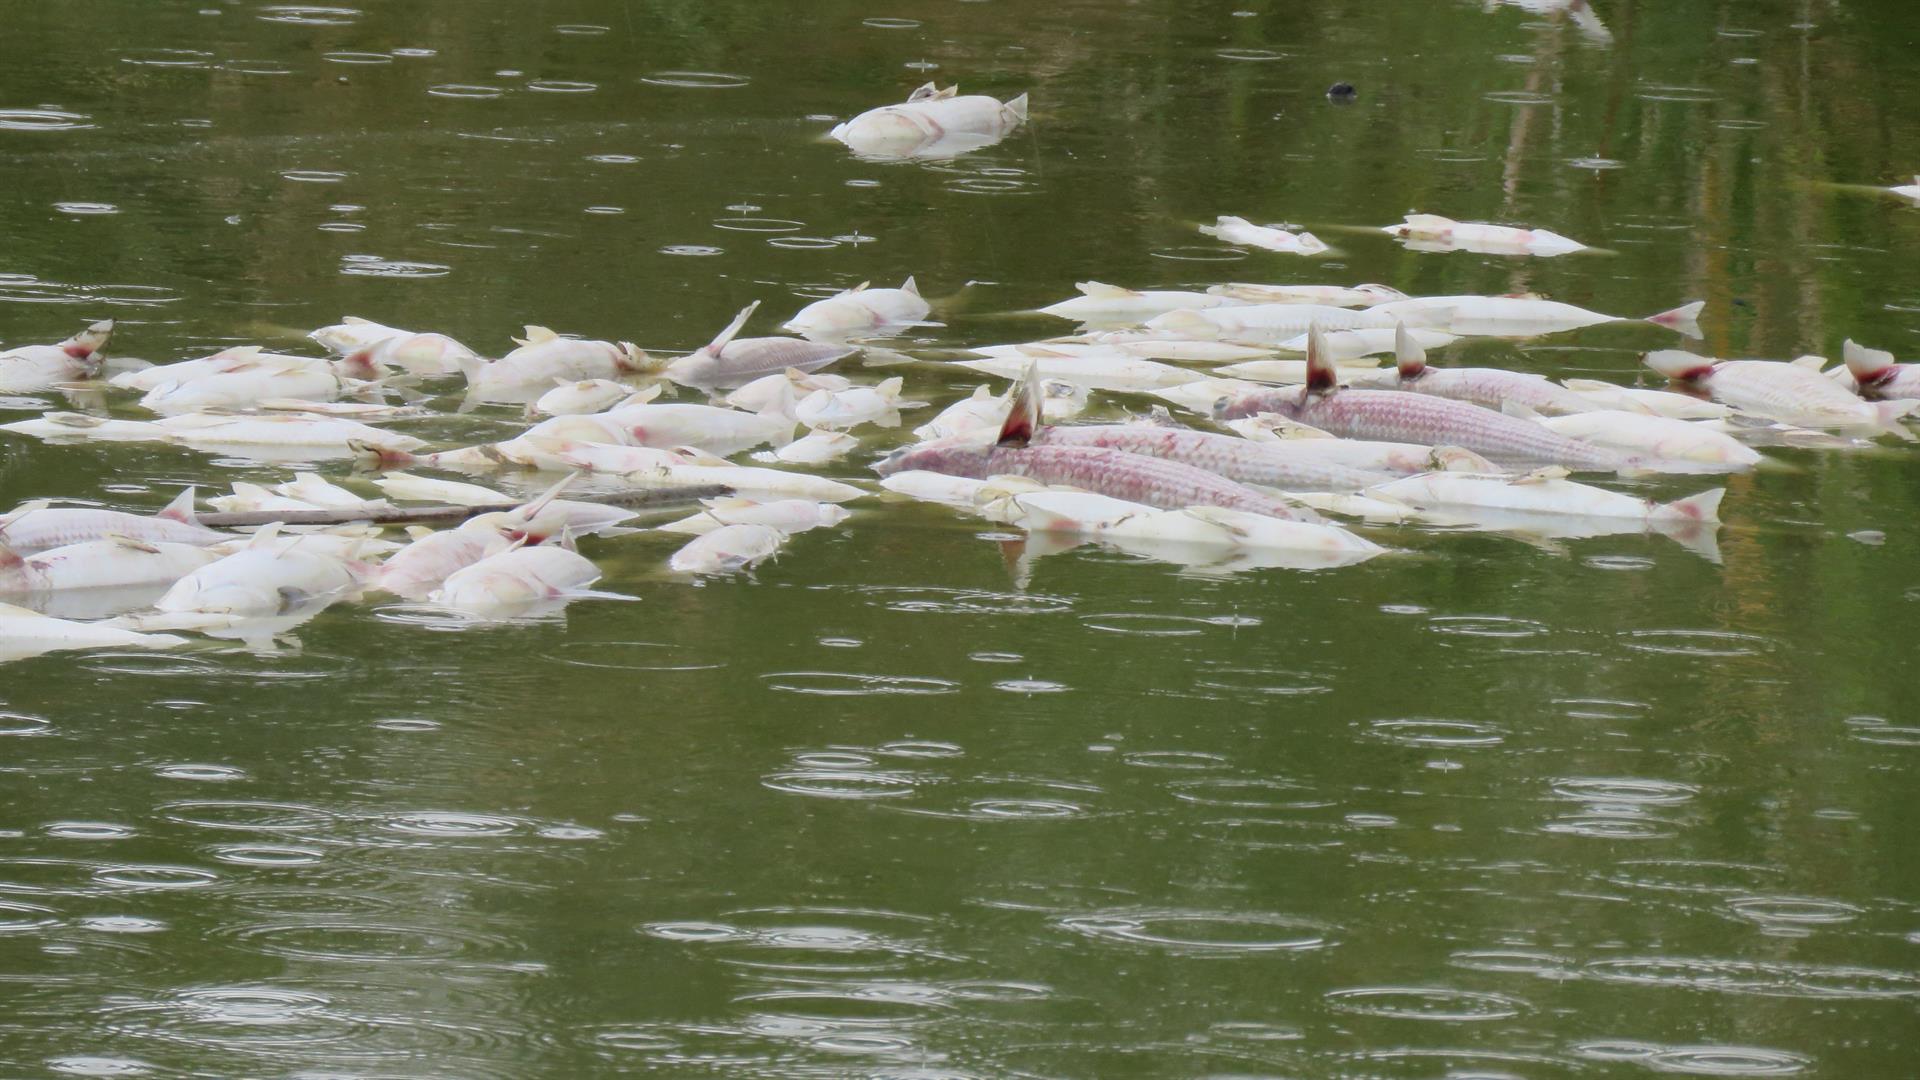 PALOS DE LA FRONTERA (HUELVA), 17/10/2022.- La organización Ecologistas en Acción ha denunciado la aparición de miles de peces muertos en el Paraje Natural Estero Domingo Rubio, Zona de Especial Protección de Aves (ZEPA) y Lugar de Interés Comunitario (LIC) de la Red Natura 2000 de la Unión Europea, ubicado en Palos de la Frontera (Huelva). EFE/Ecologistas en Acción //SOLO USO EDITORIAL/SOLO DISPONIBLE PARA ILUSTRAR LA NOTICIA QUE ACOMPAÑA (CRÉDITO OBLIGATORIO)//